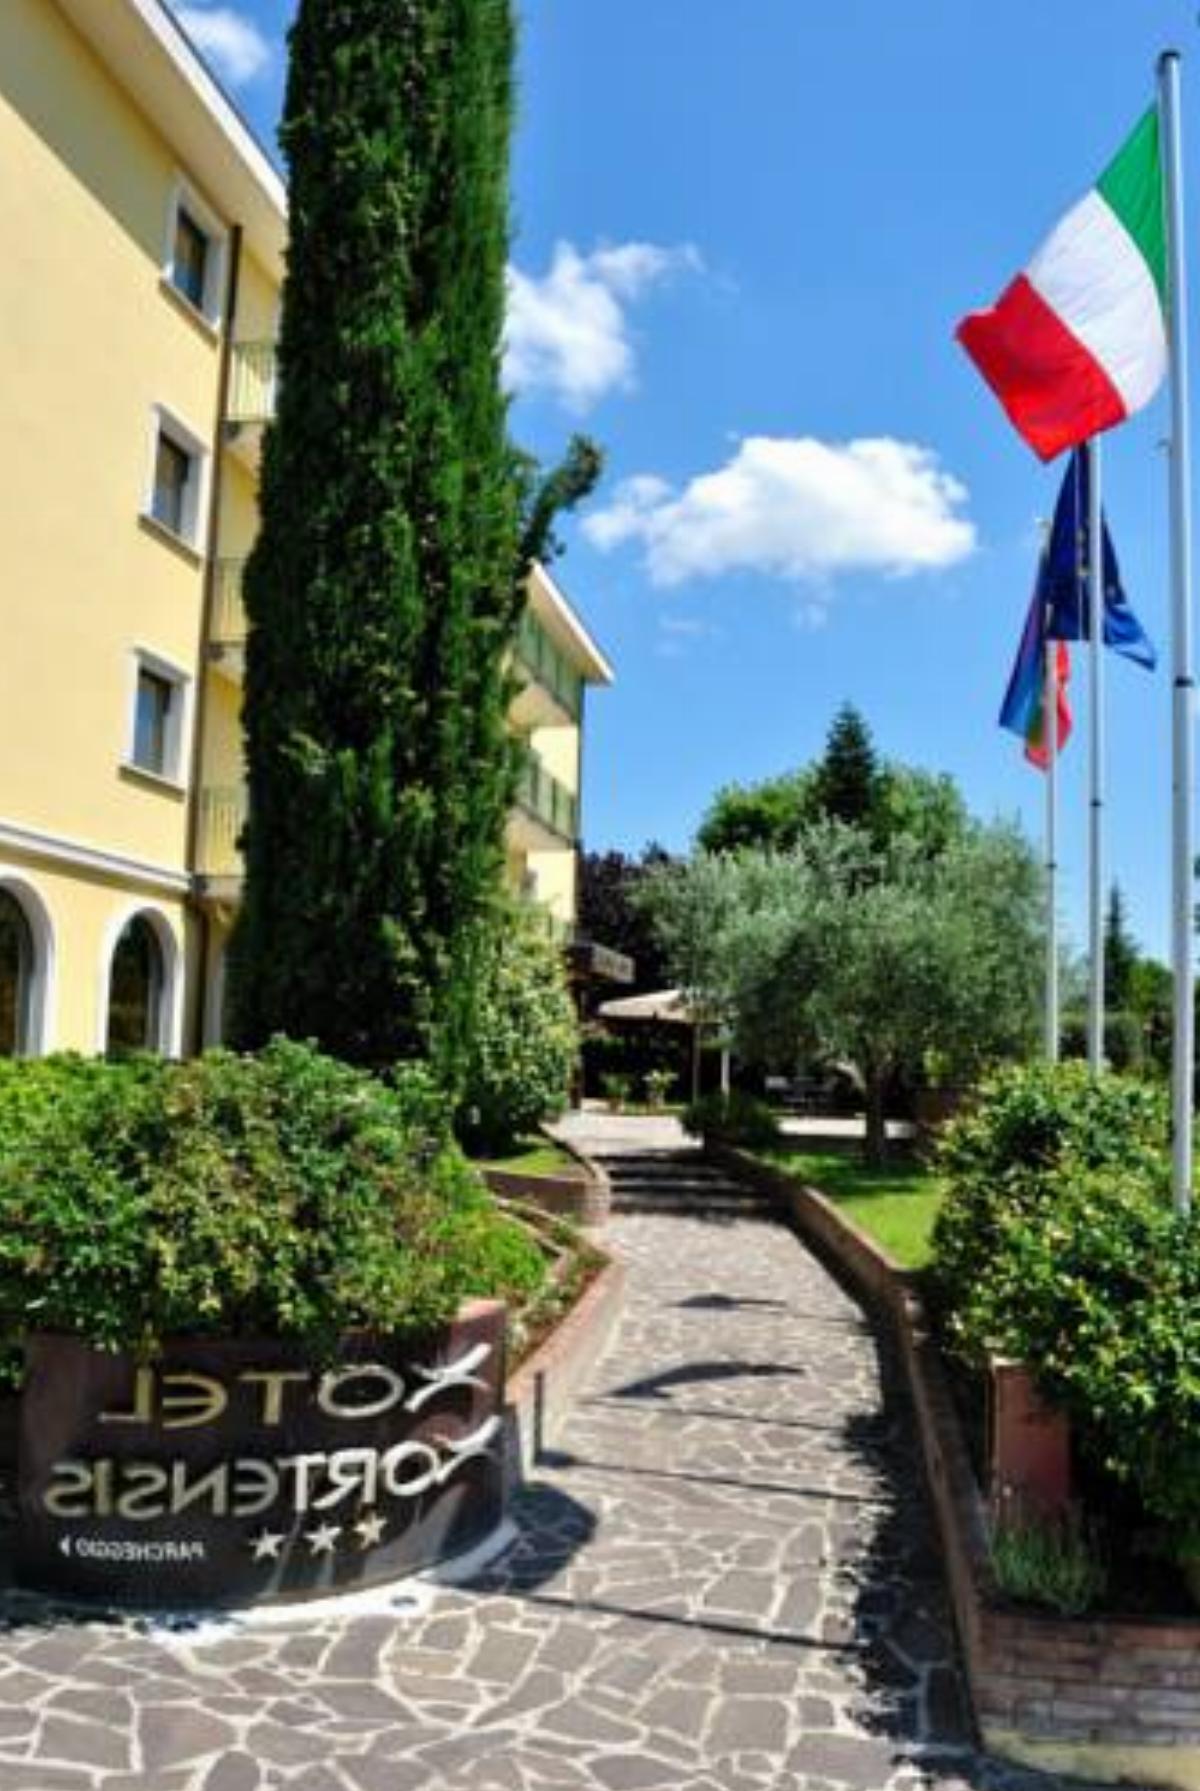 PHI Hotel Hortensis Hotel Cannara Italy